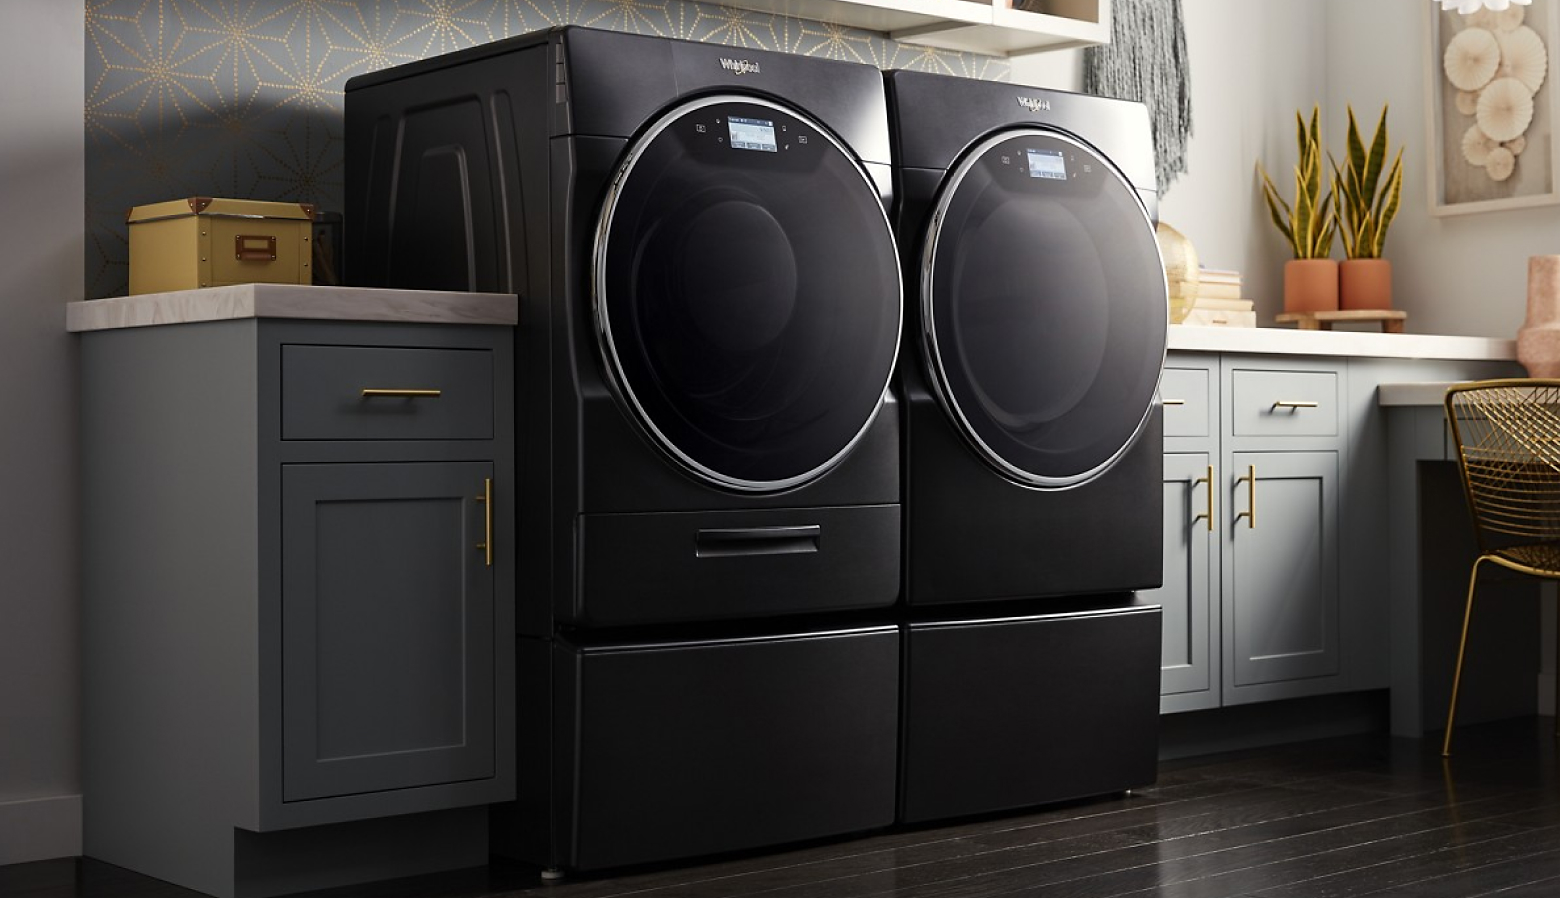 现代洗衣房中的前置洗衣机和烘干机